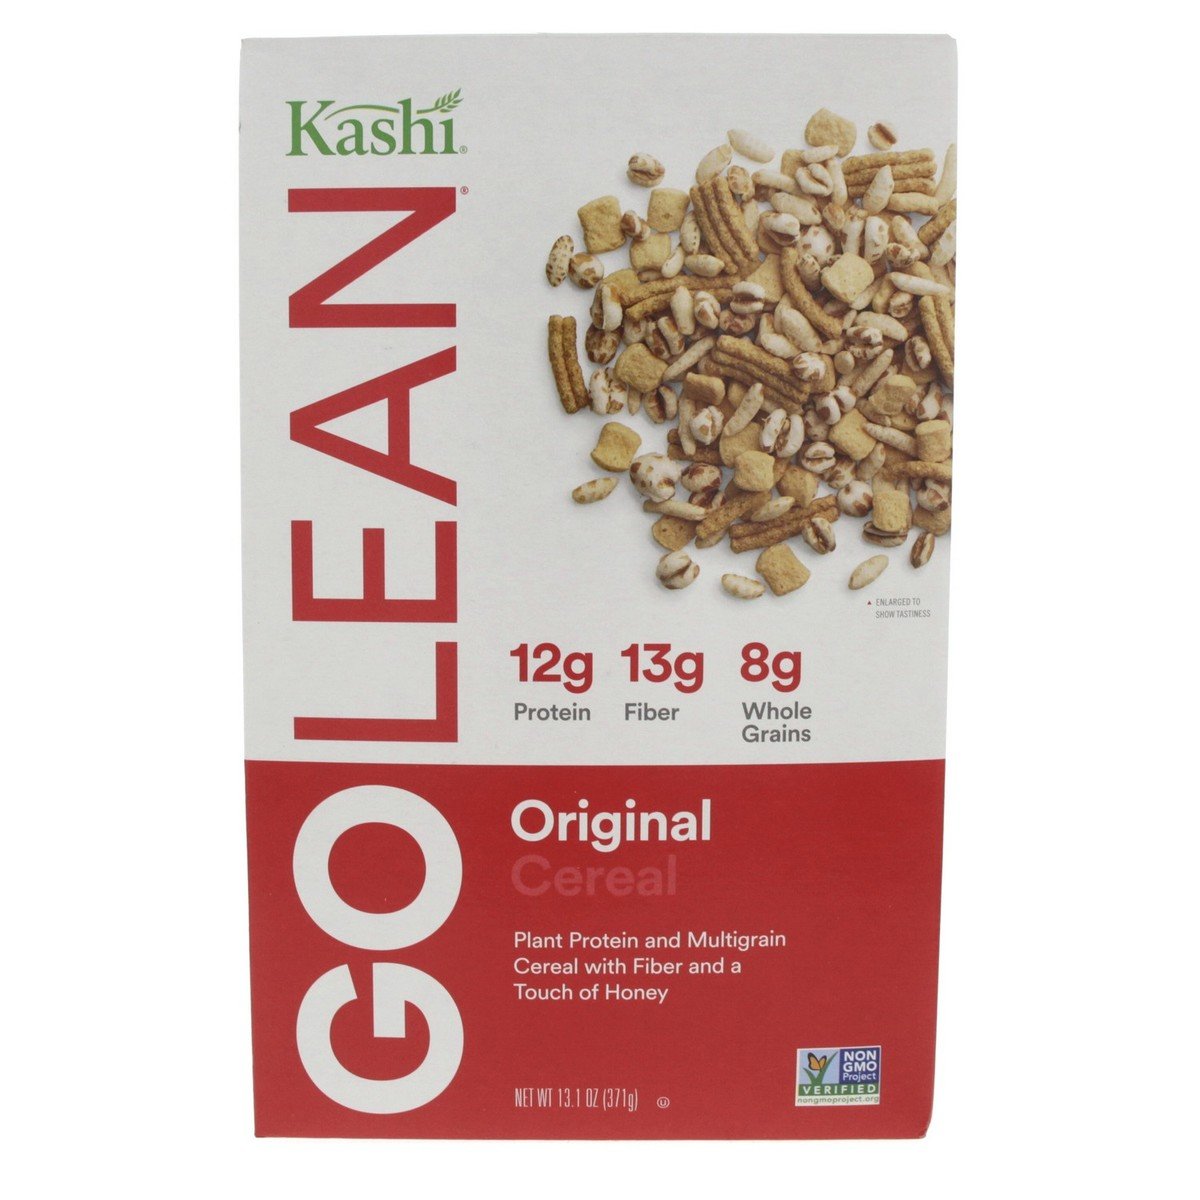 Kashi Golean Original Cereal 371 g